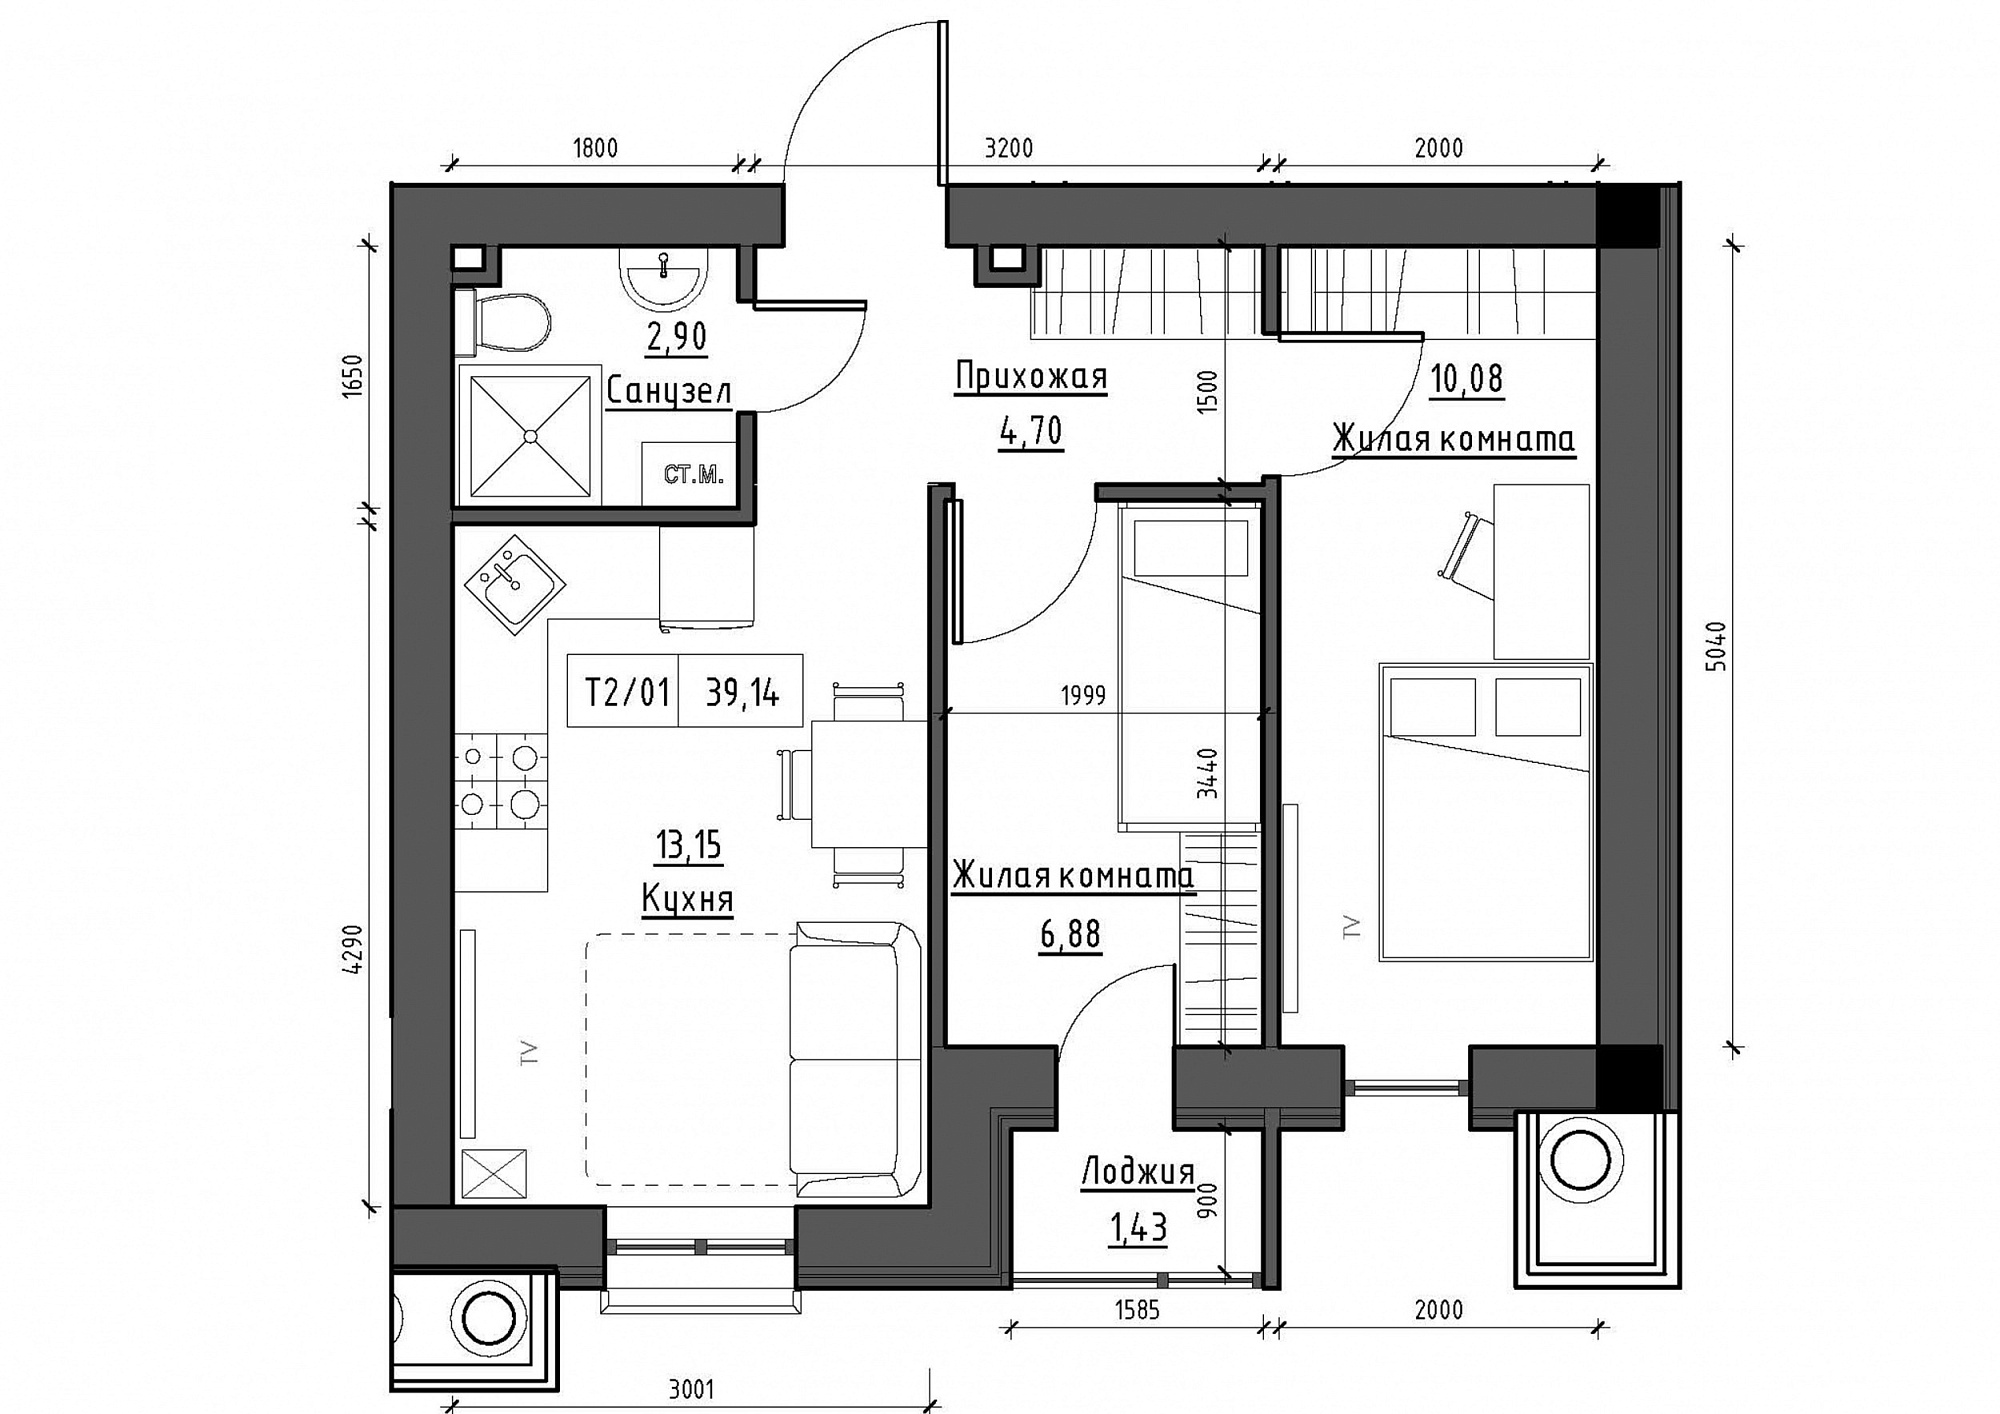 Планировка 2-к квартира площей 39.14м2, KS-012-01/0005.